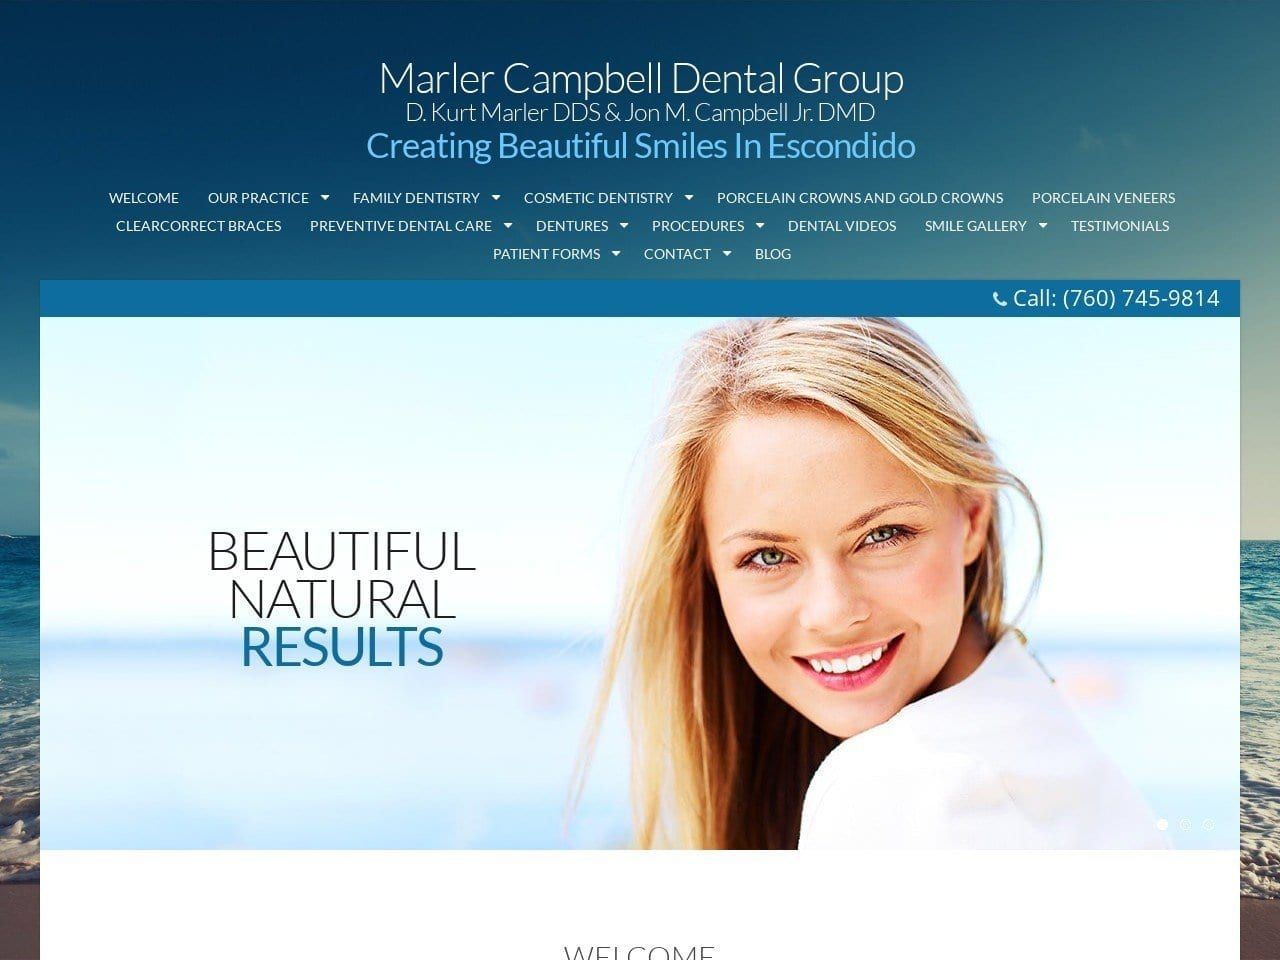 Marler Campbell Dental Website Screenshot from marlercampbelldental.com